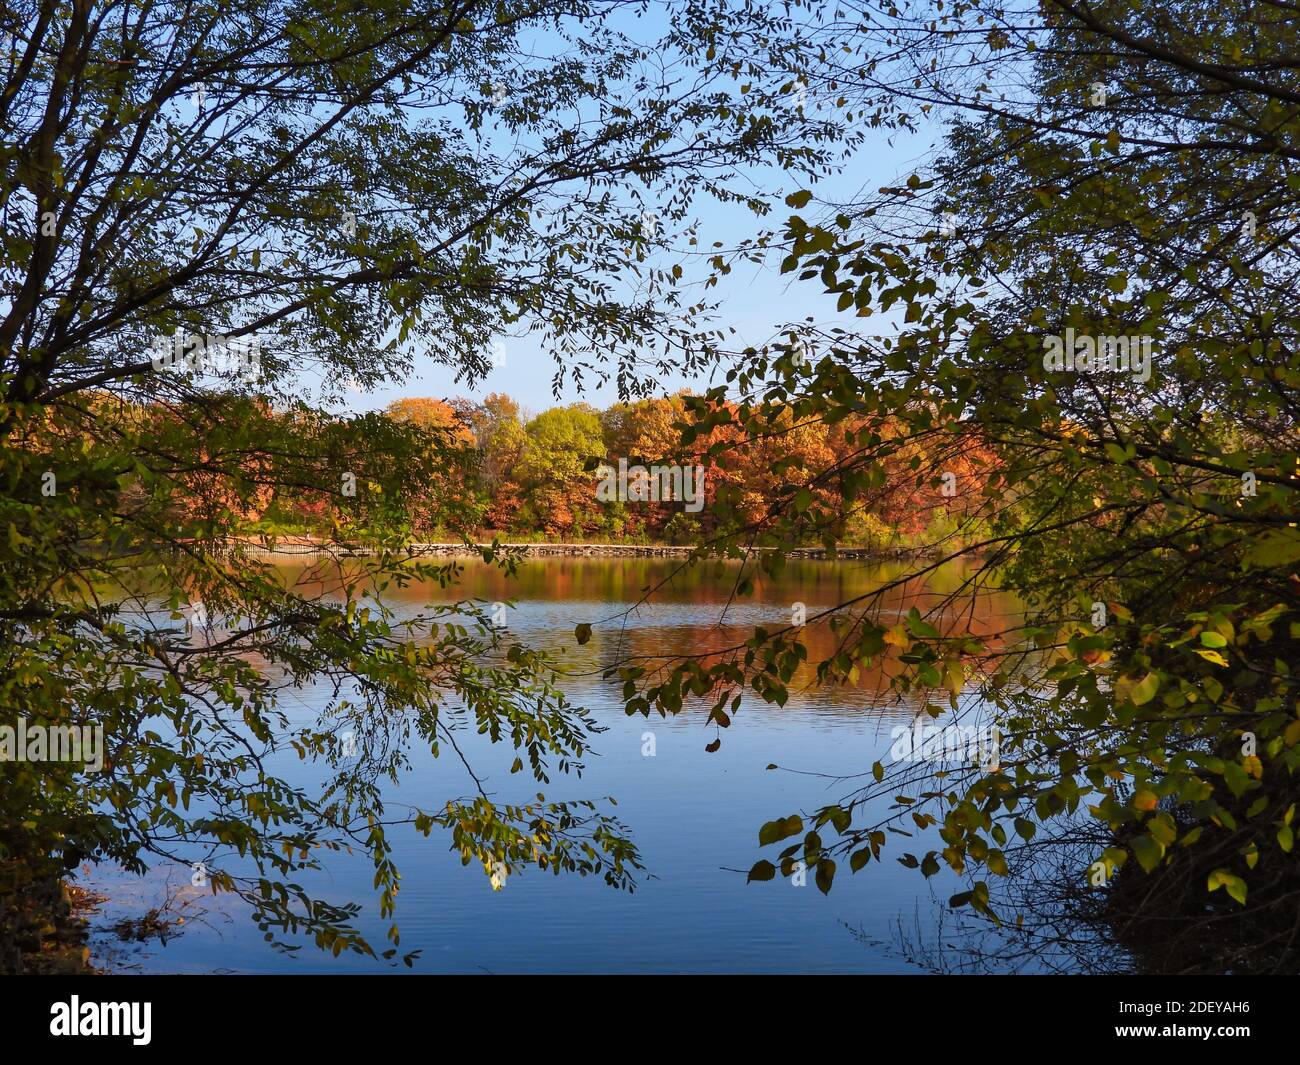 Paysage d'automne encadré vue de divers arbres de couleur automnale à travers un lac avec reflet de feuilles d'arbres jaunes, orange, rouges, brunes et vertes dans l'eau Banque D'Images